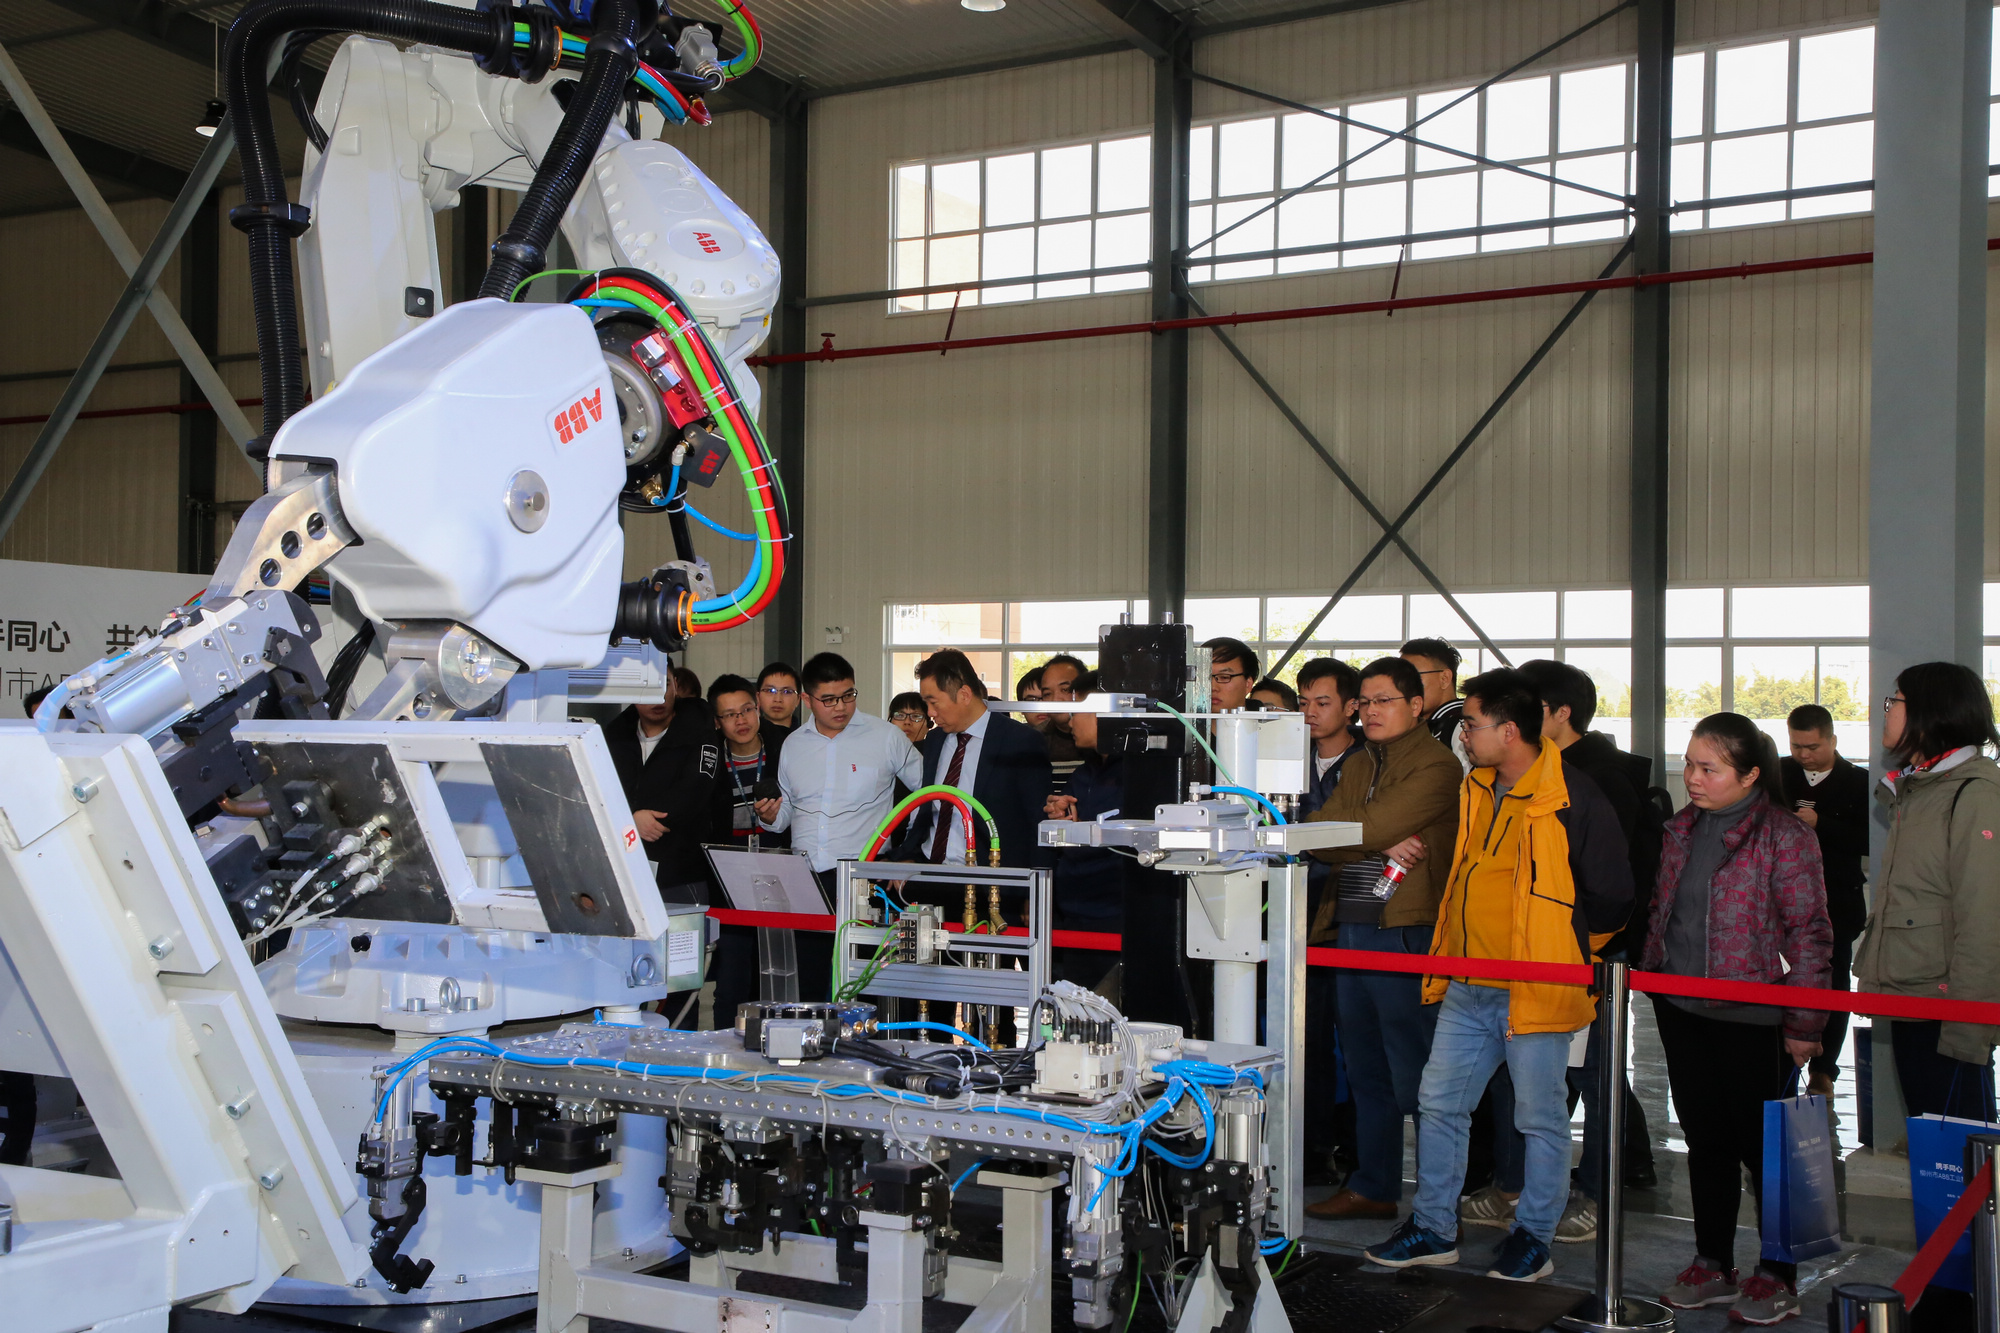 柳职的ABB机器人展览吸引大批来访者驻足.jpeg